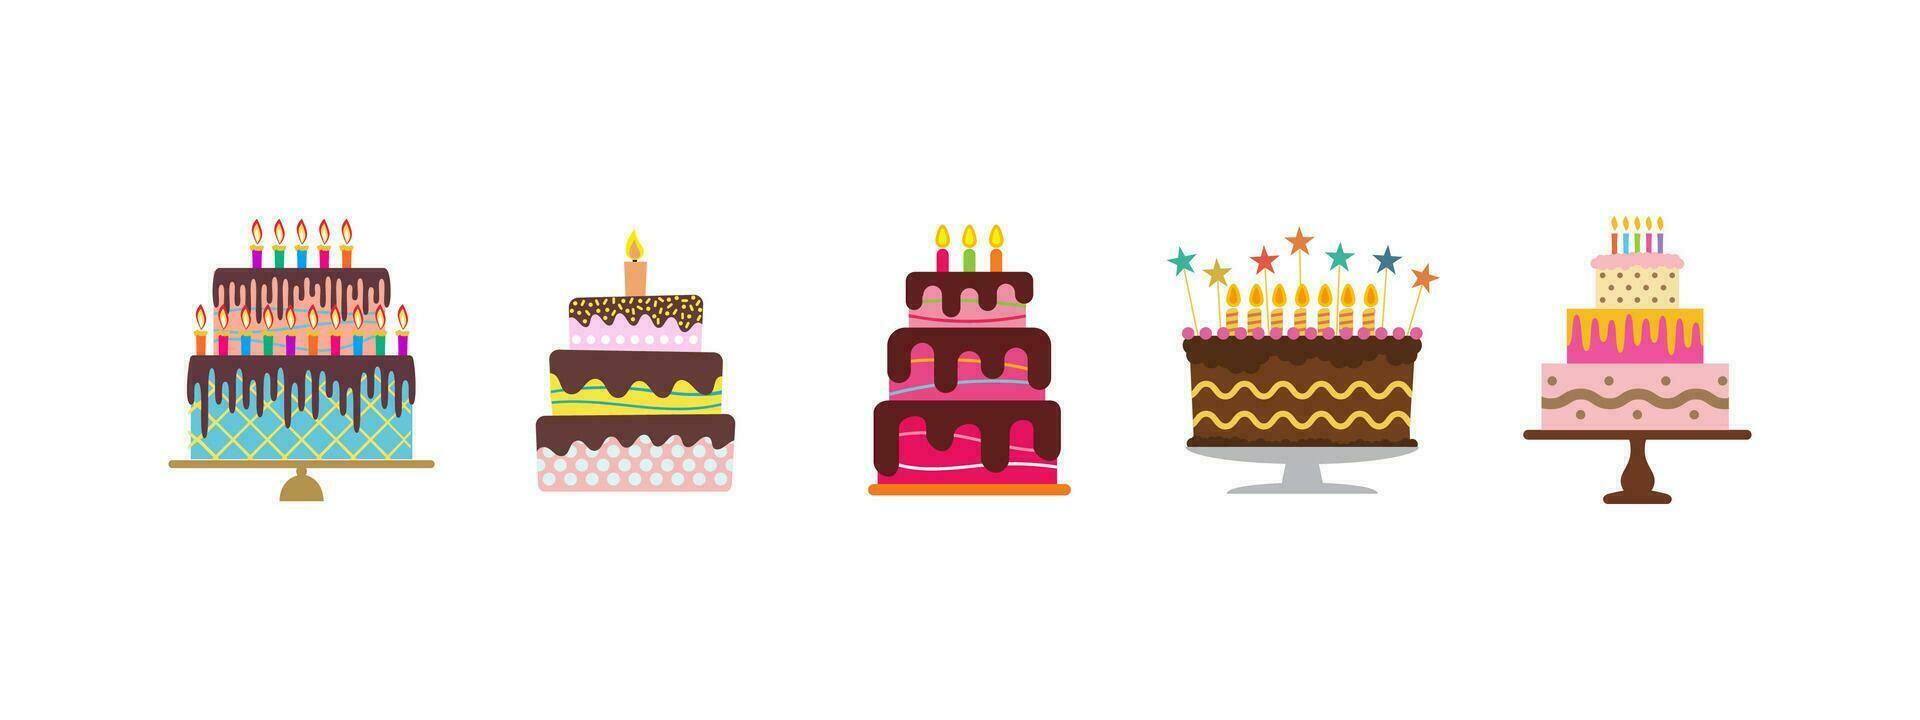 dulce cumpleaños pasteles con ardiente velas vector